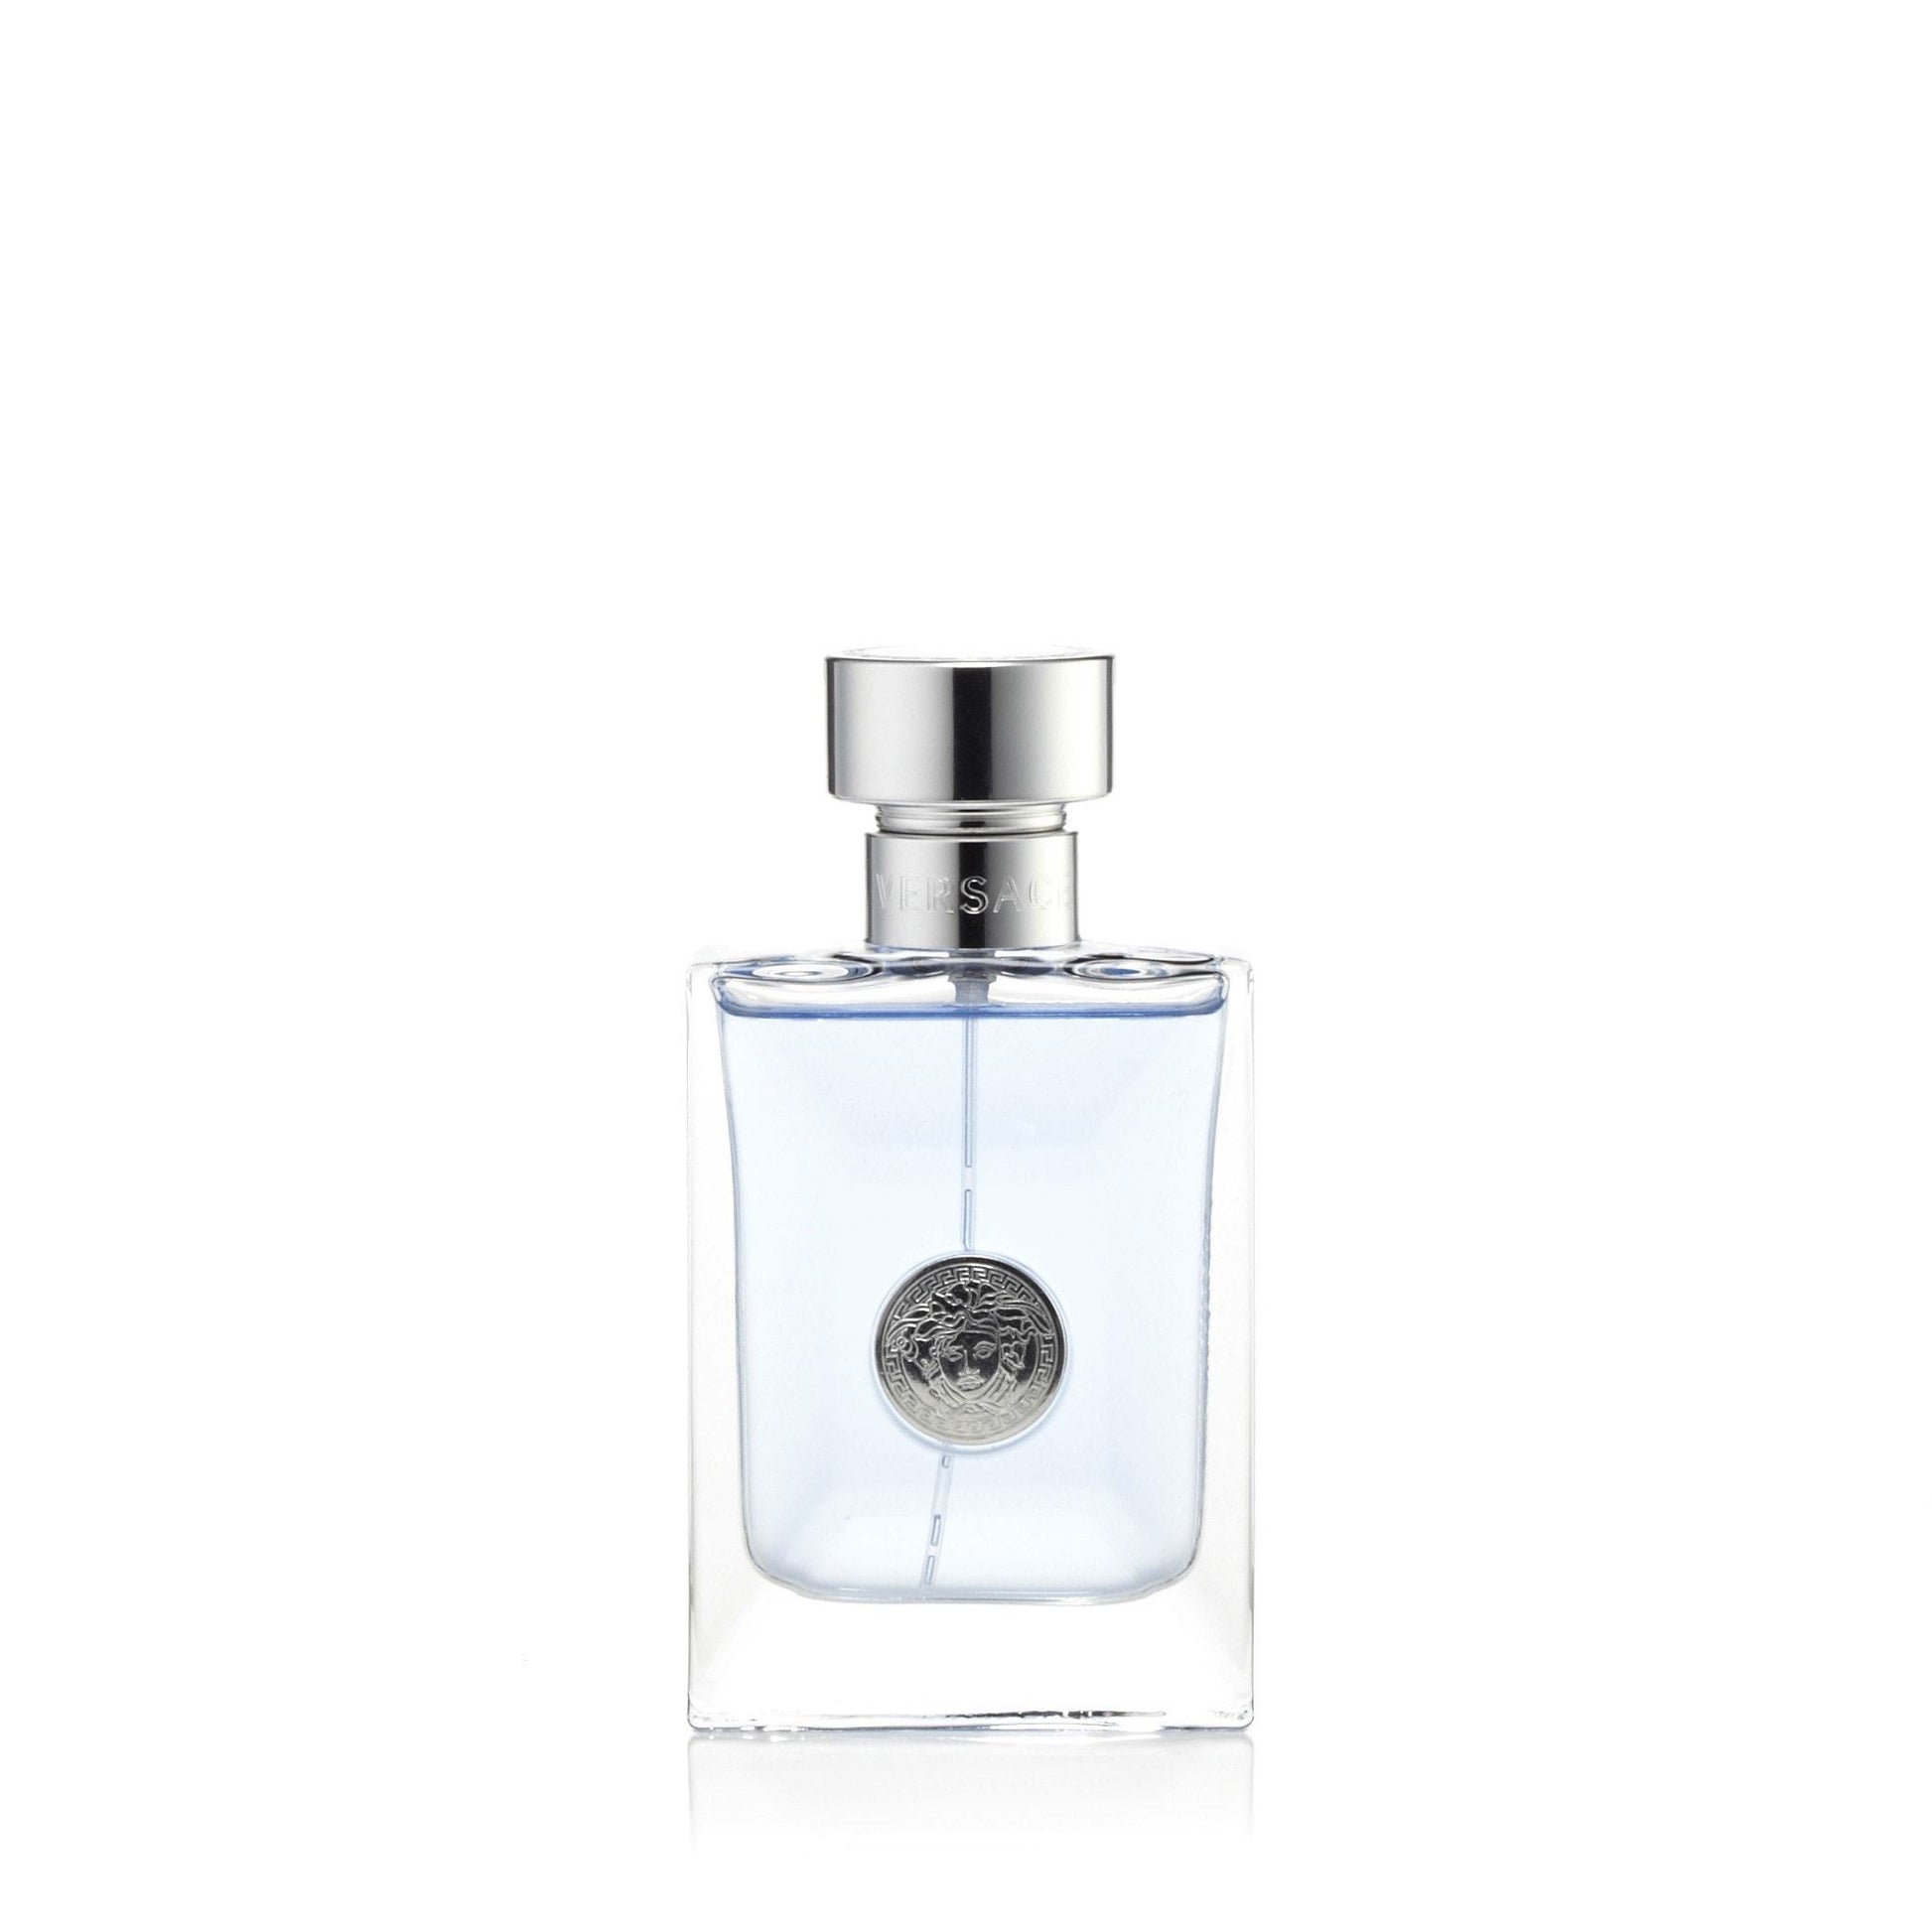 Pour Homme Eau de Toilette Spray for Men by Versace, Product image 5